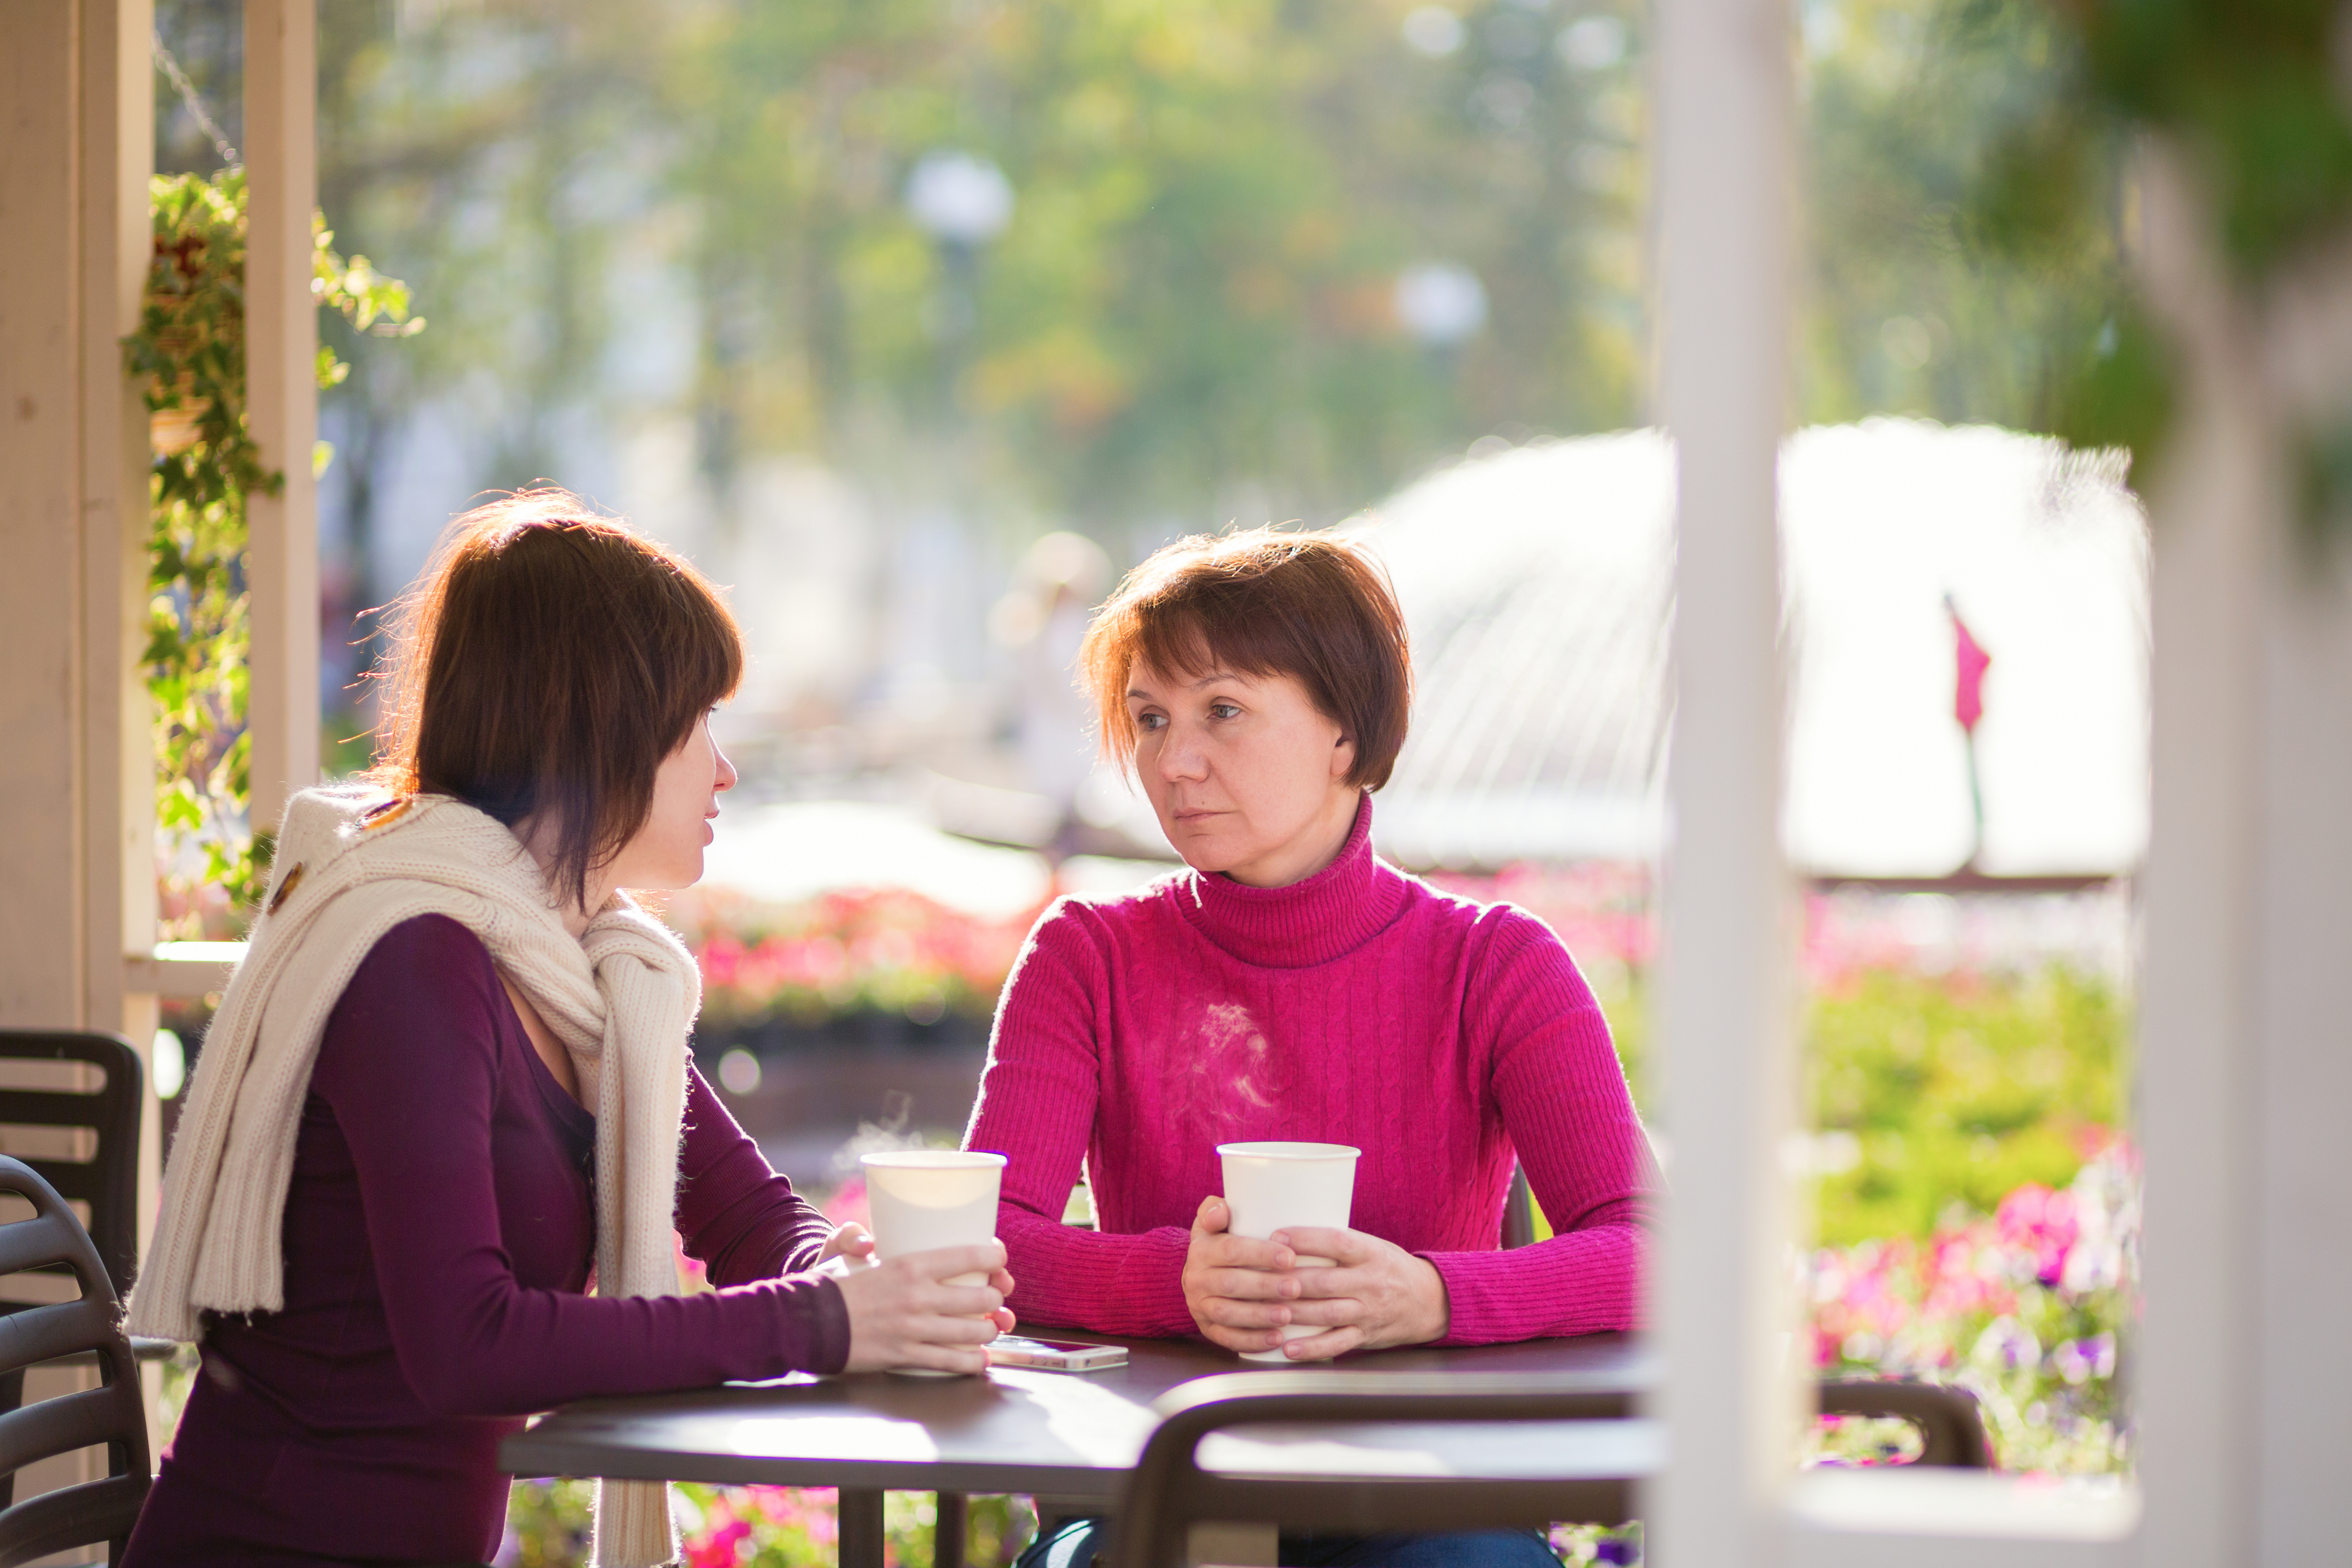 Une jeune femme et une femme plus âgée sont assises dans un café | Source : Shutterstock